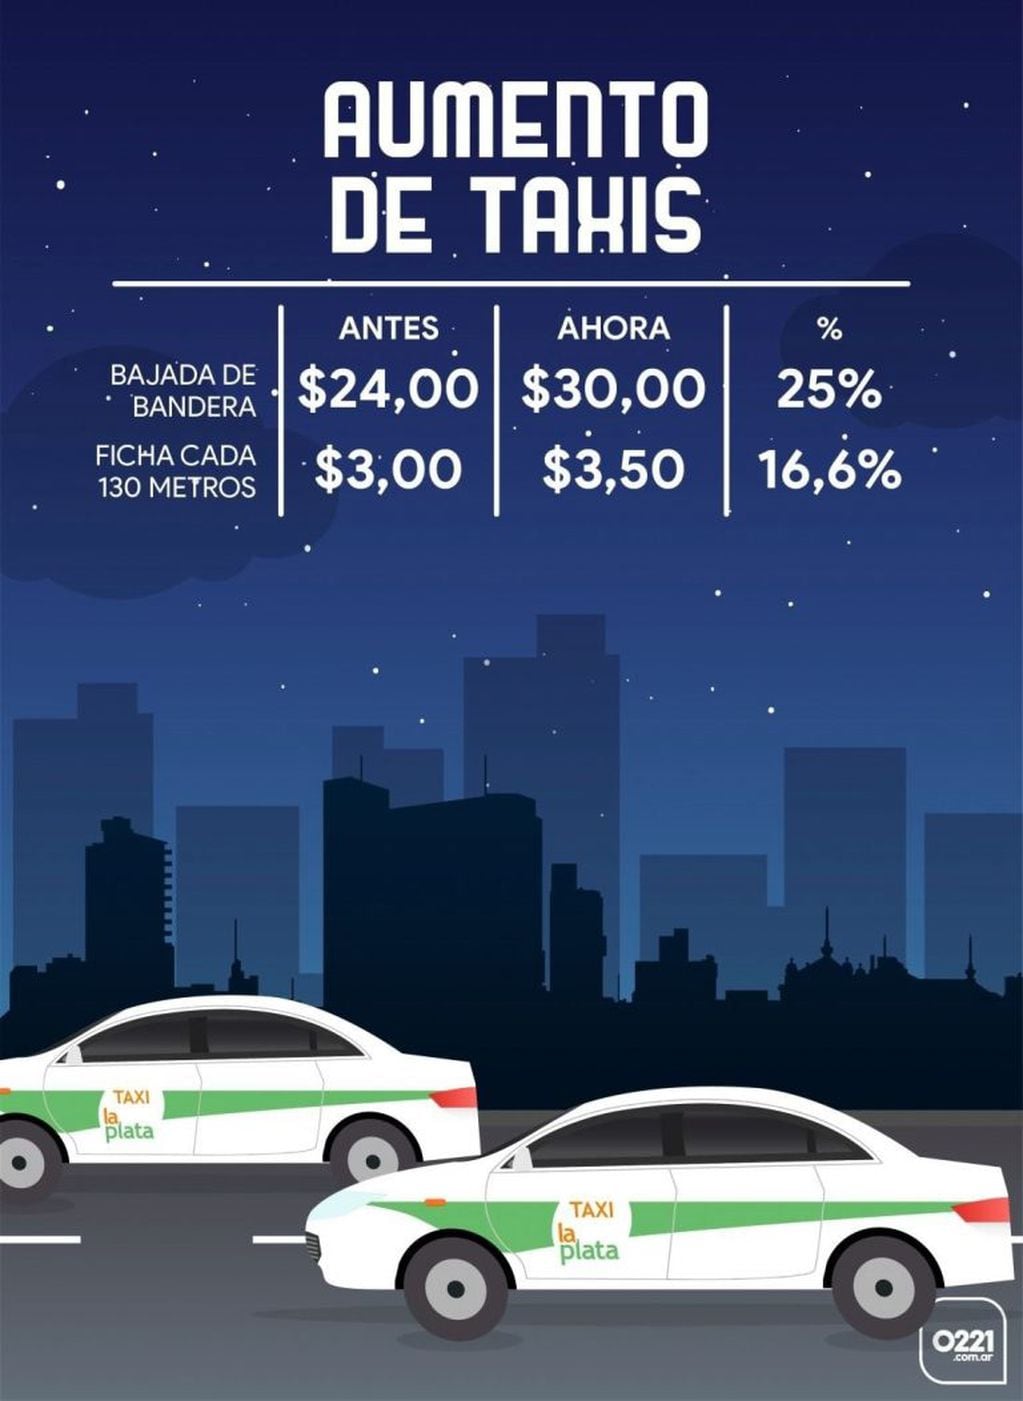 Empezó a regir el aumento de los viajes en taxis en La Plata: la bajada de bandera ahora está $30. Imagen editada por 0221.